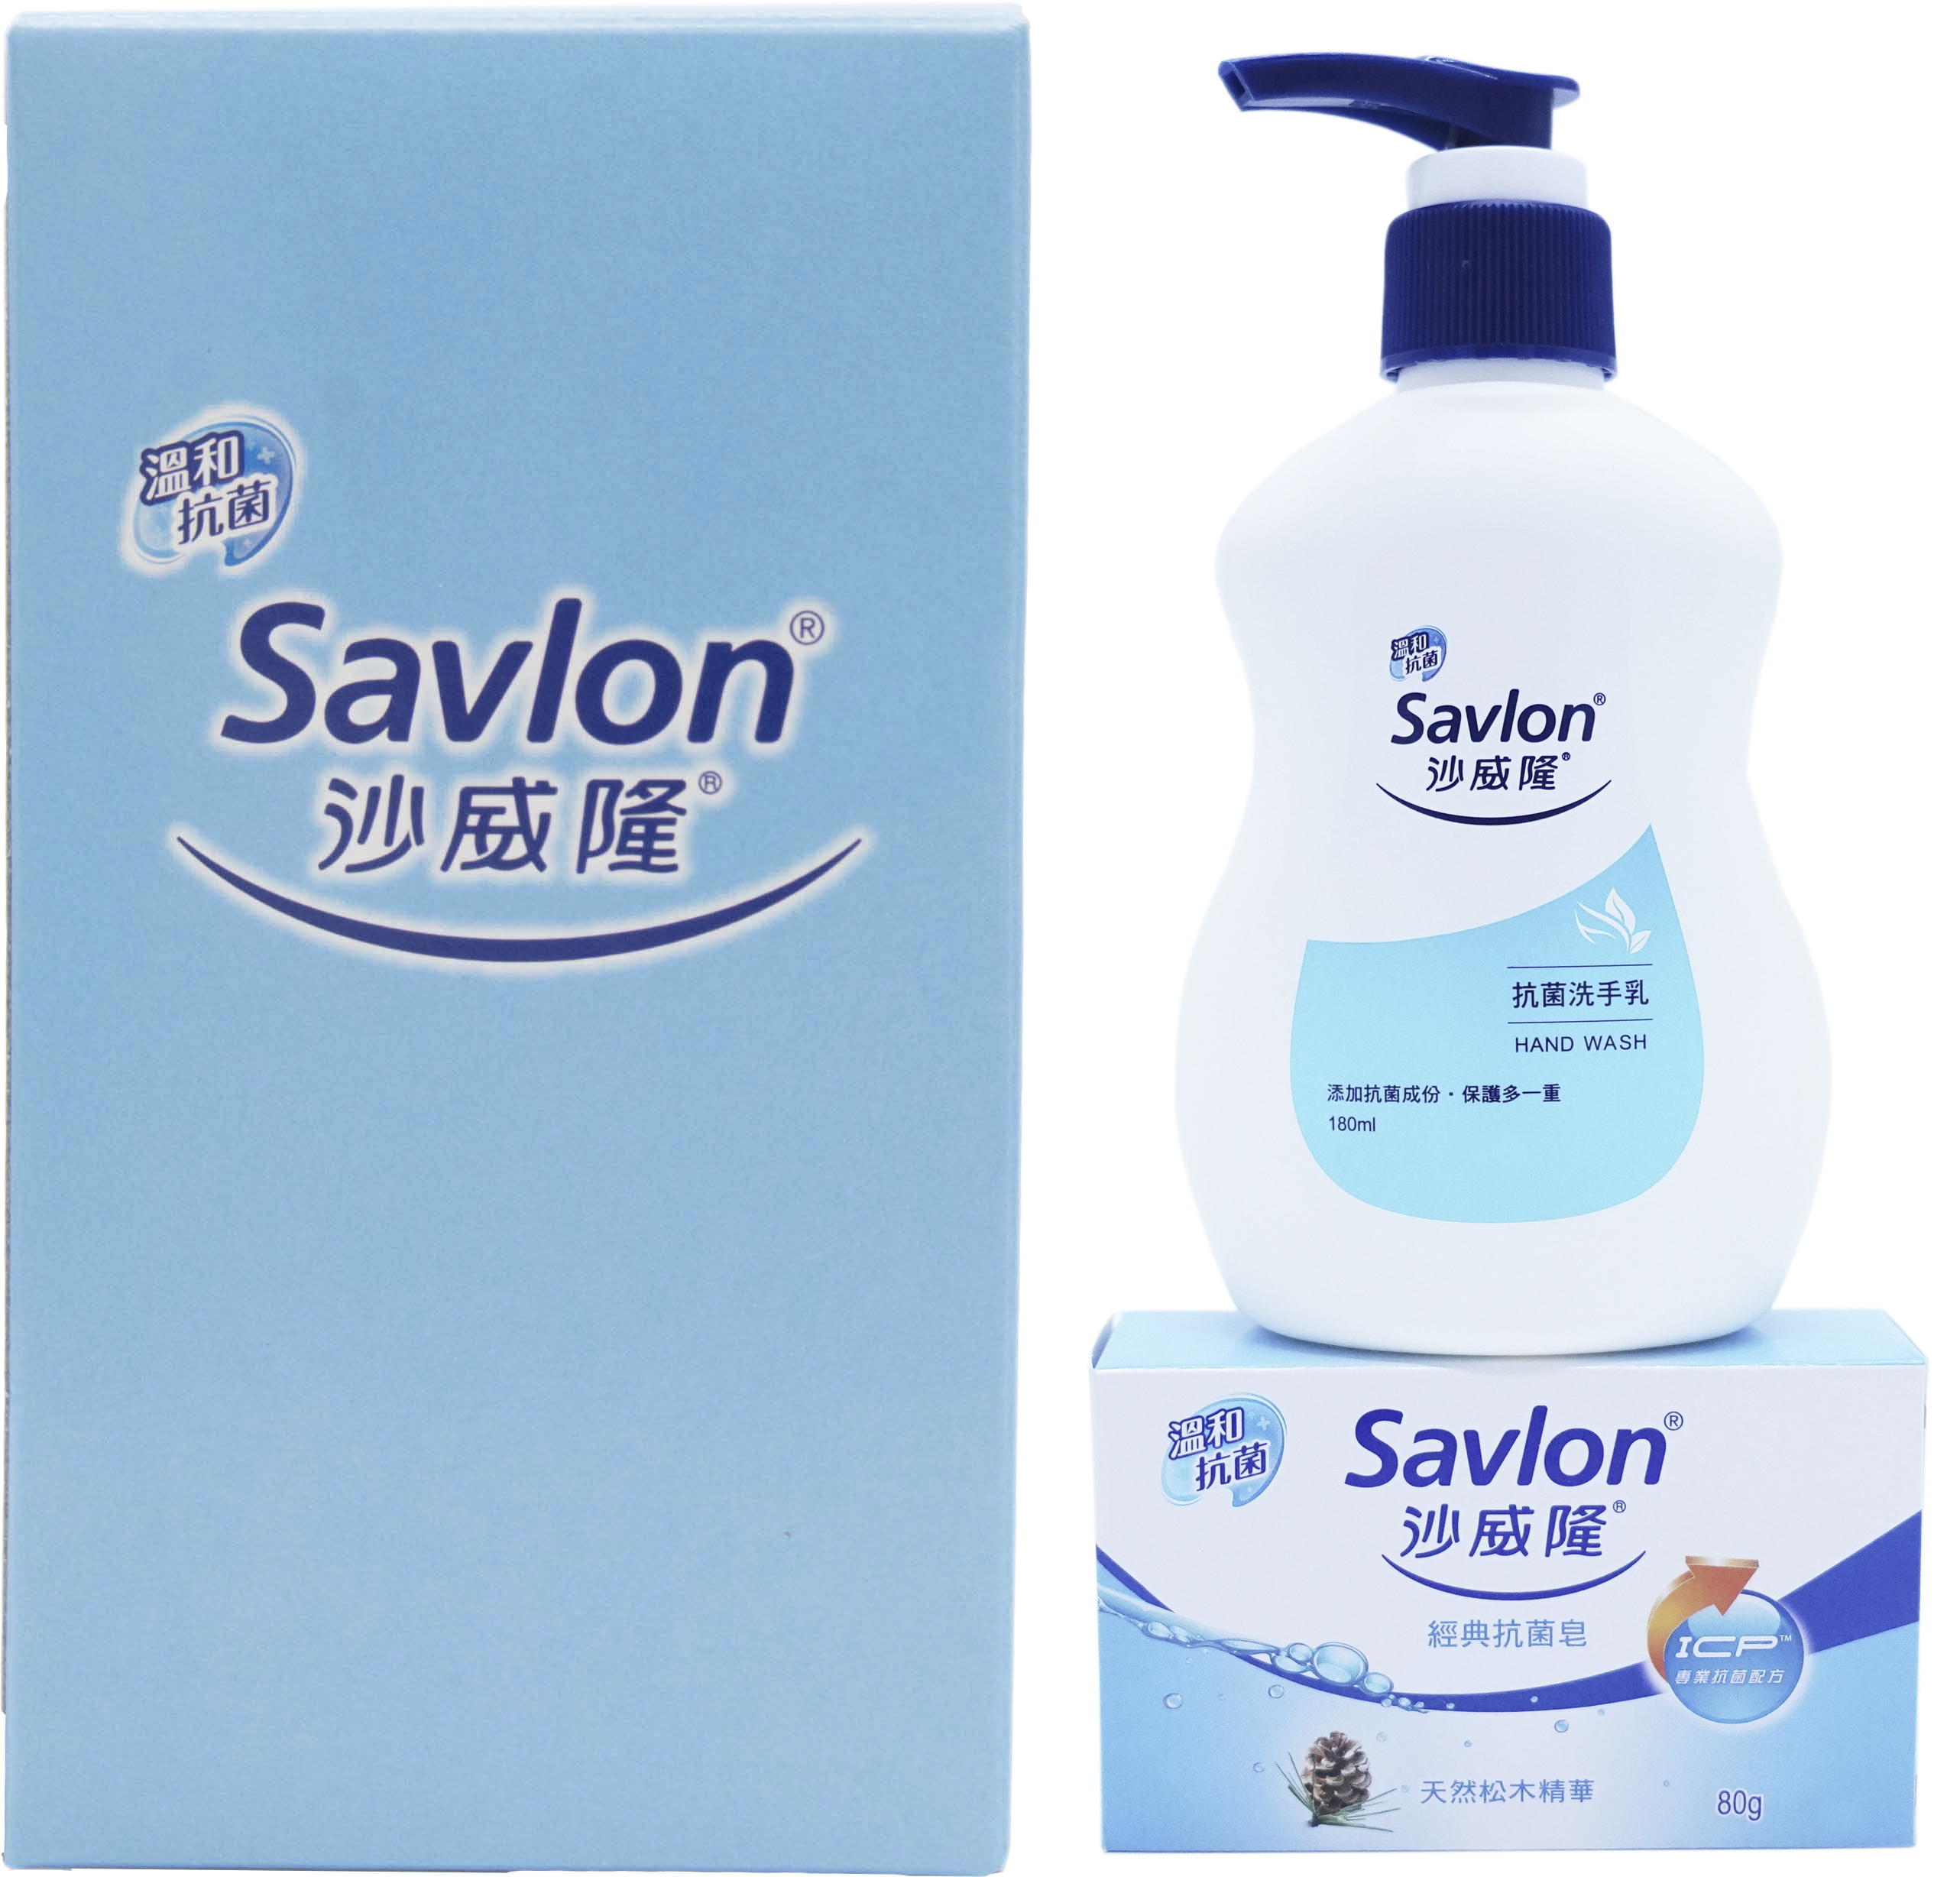 沙威隆-簡易禮盒組(抗菌洗手乳180ml+經典抗菌皂80g)